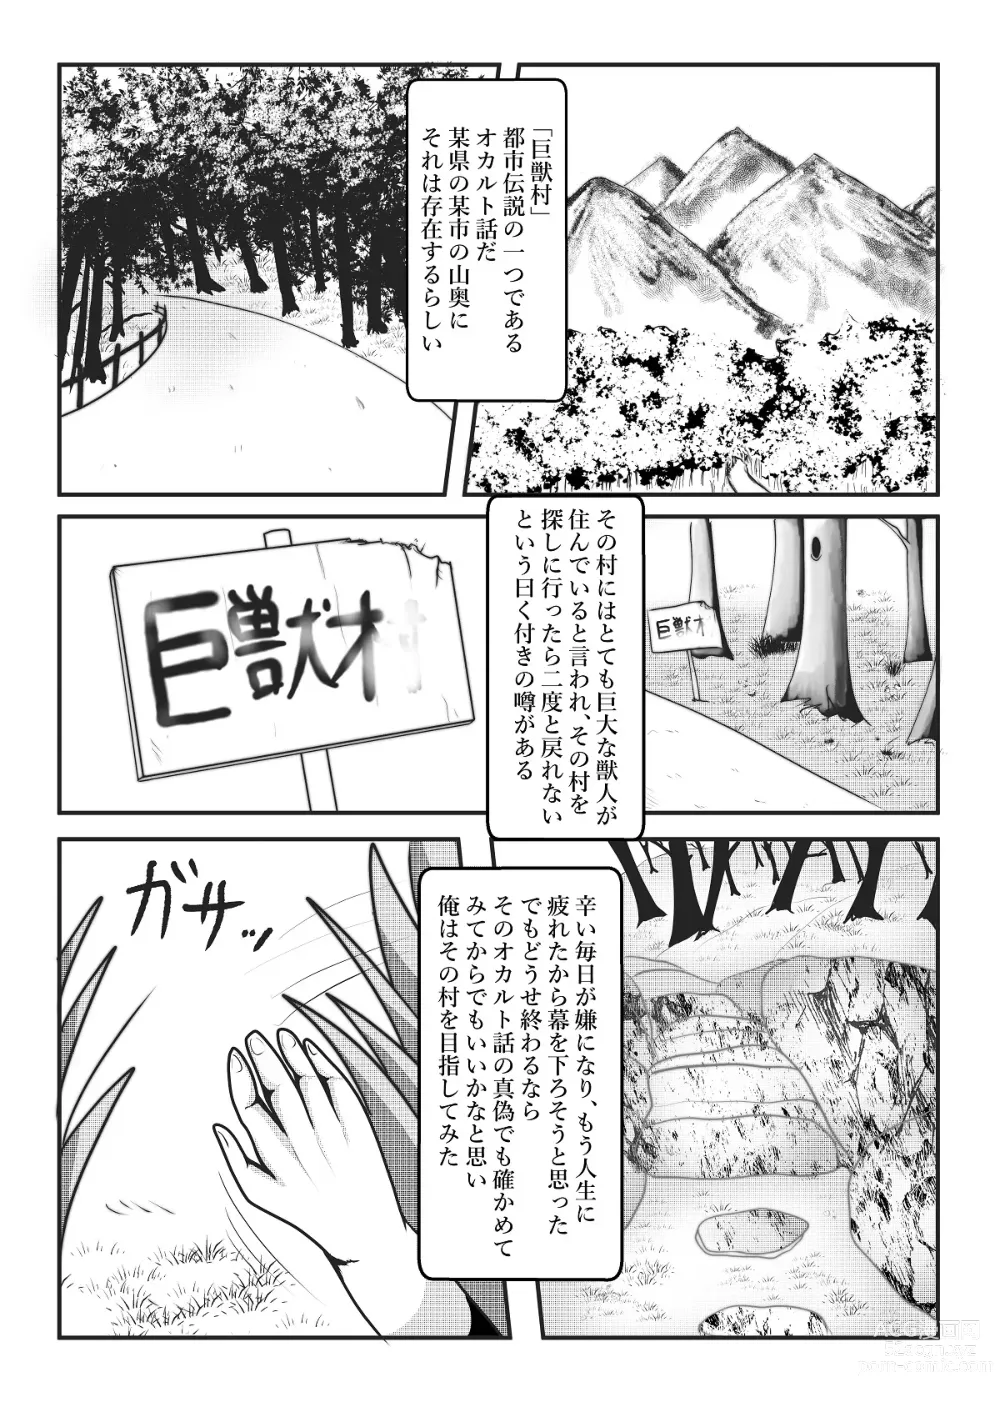 Page 4 of doujinshi Kyoju mura